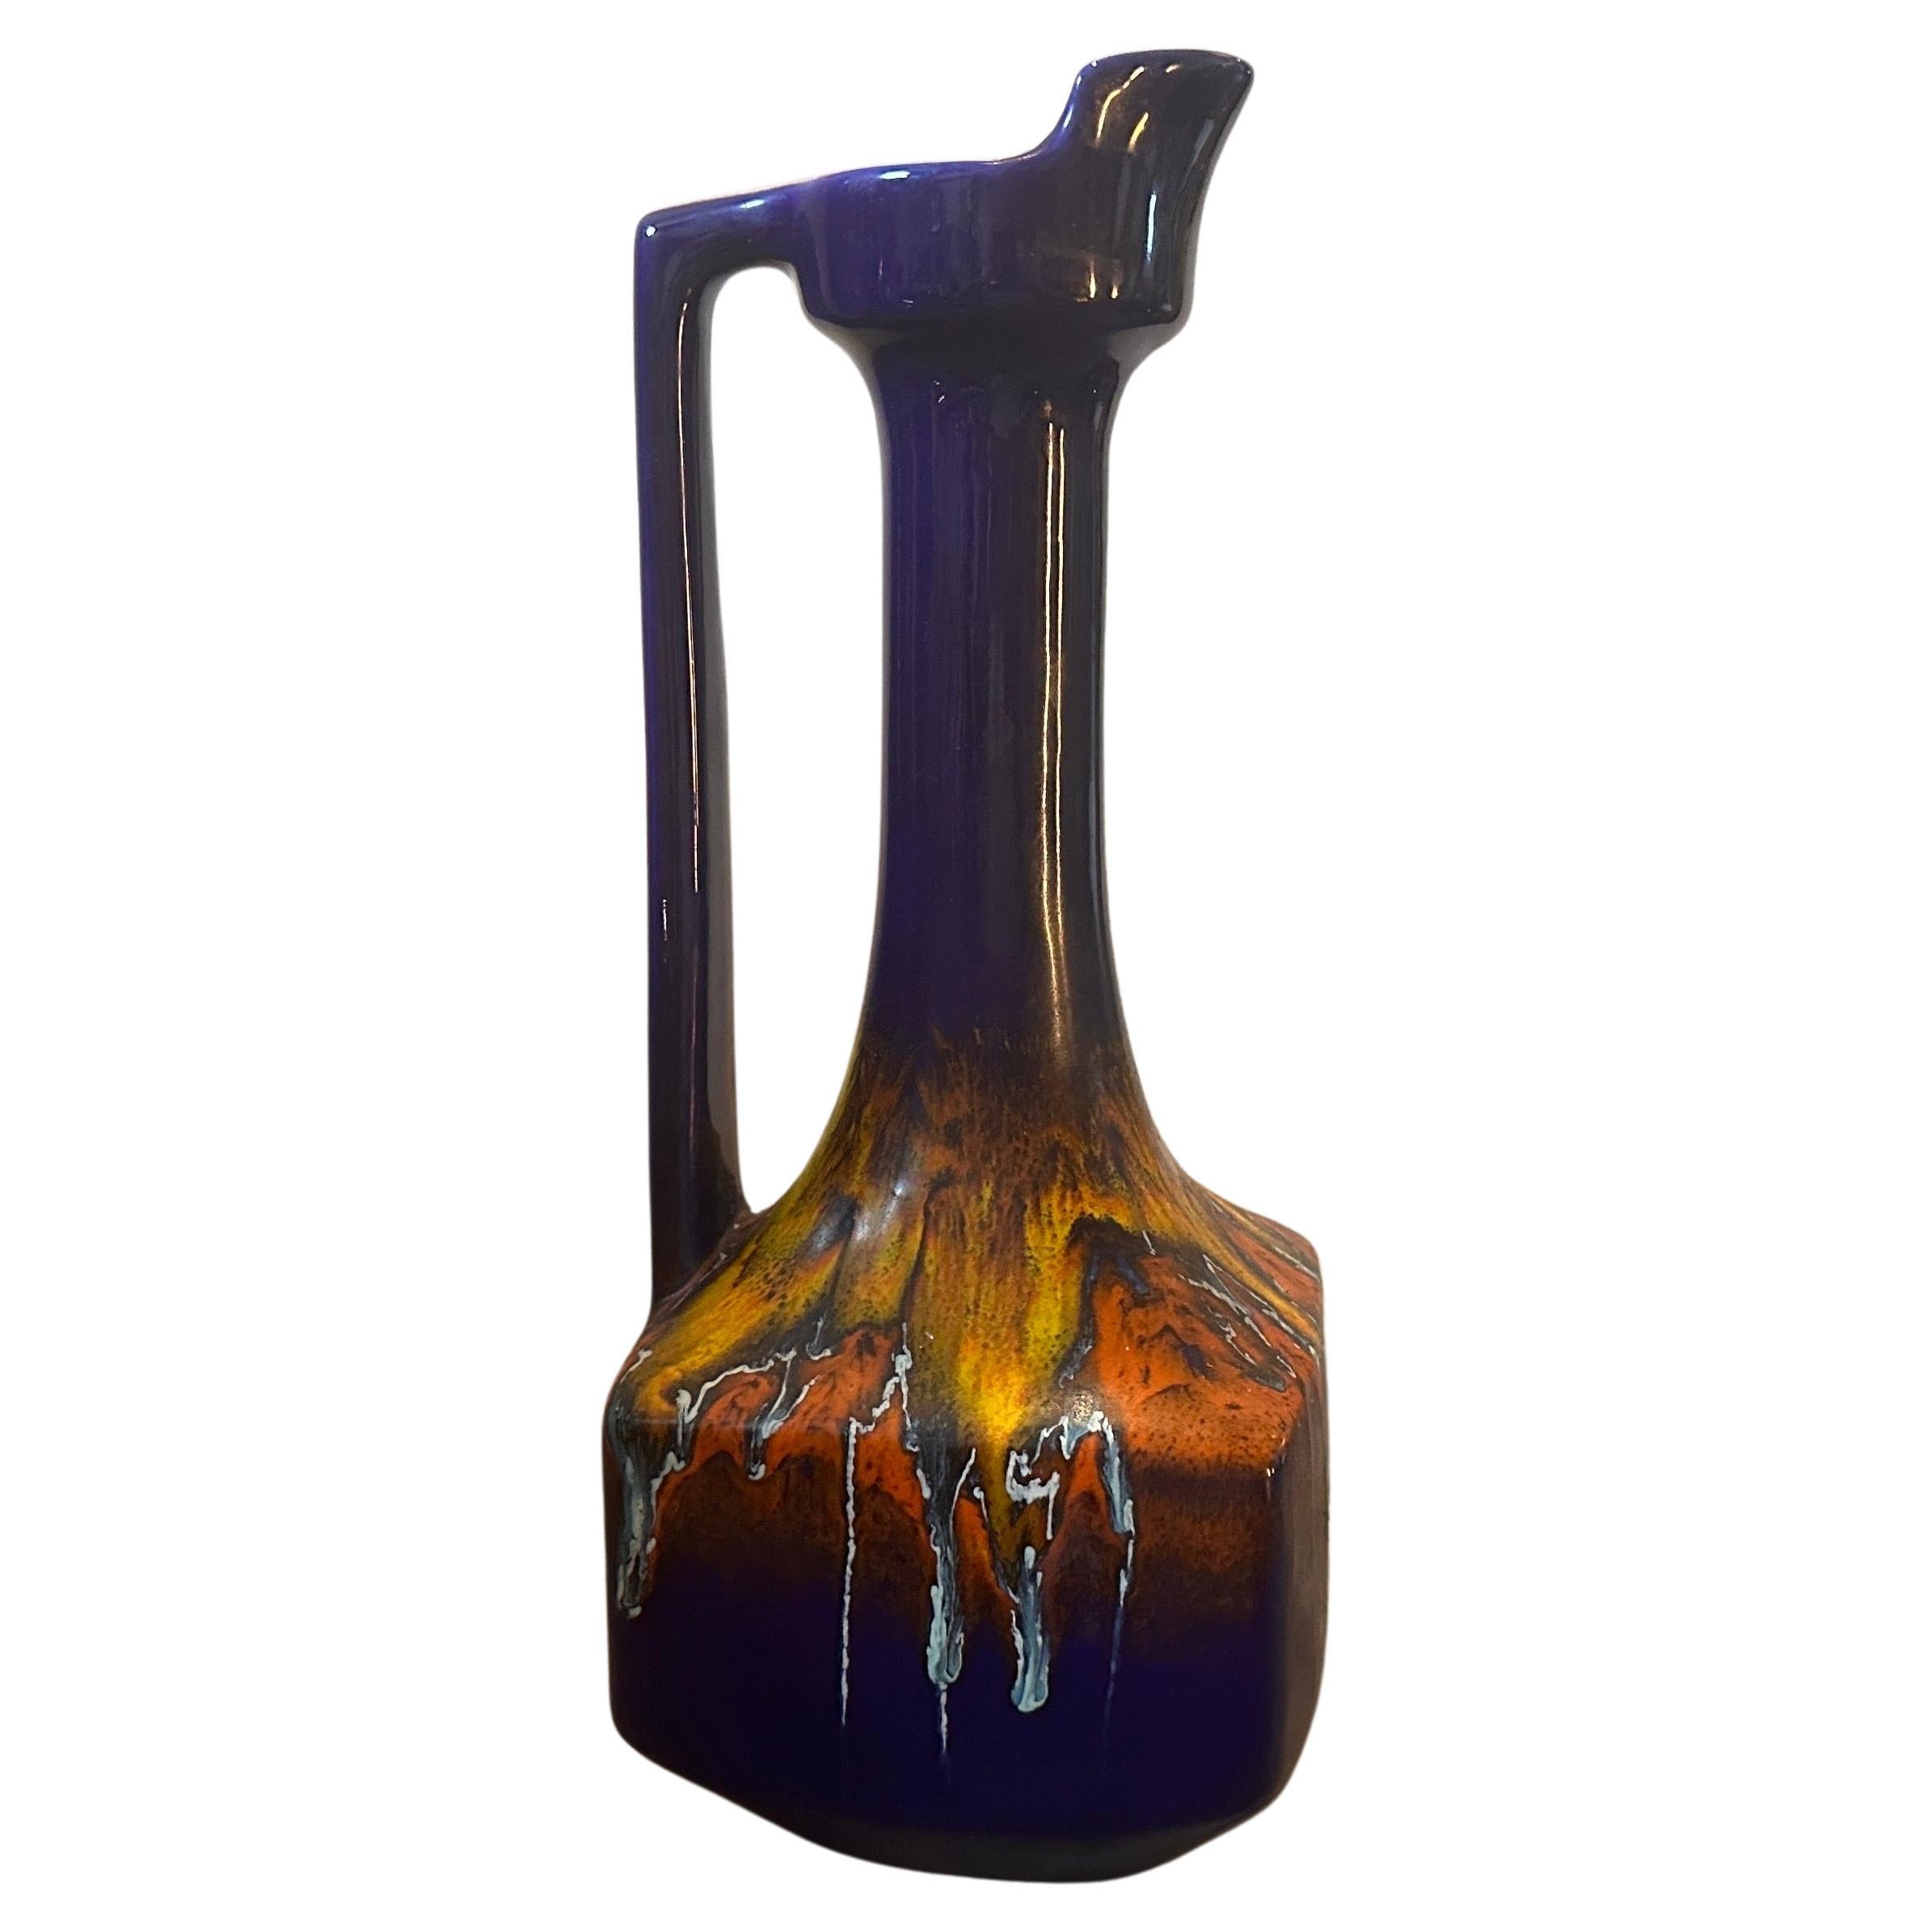 Ce vase à carafe conçu et fabriqué par Bertoncello est une pièce d'art et de design visuellement captivante et historiquement significative. Sa combinaison unique de formes, de couleurs et de savoir-faire incarne l'esprit du modernisme du milieu du